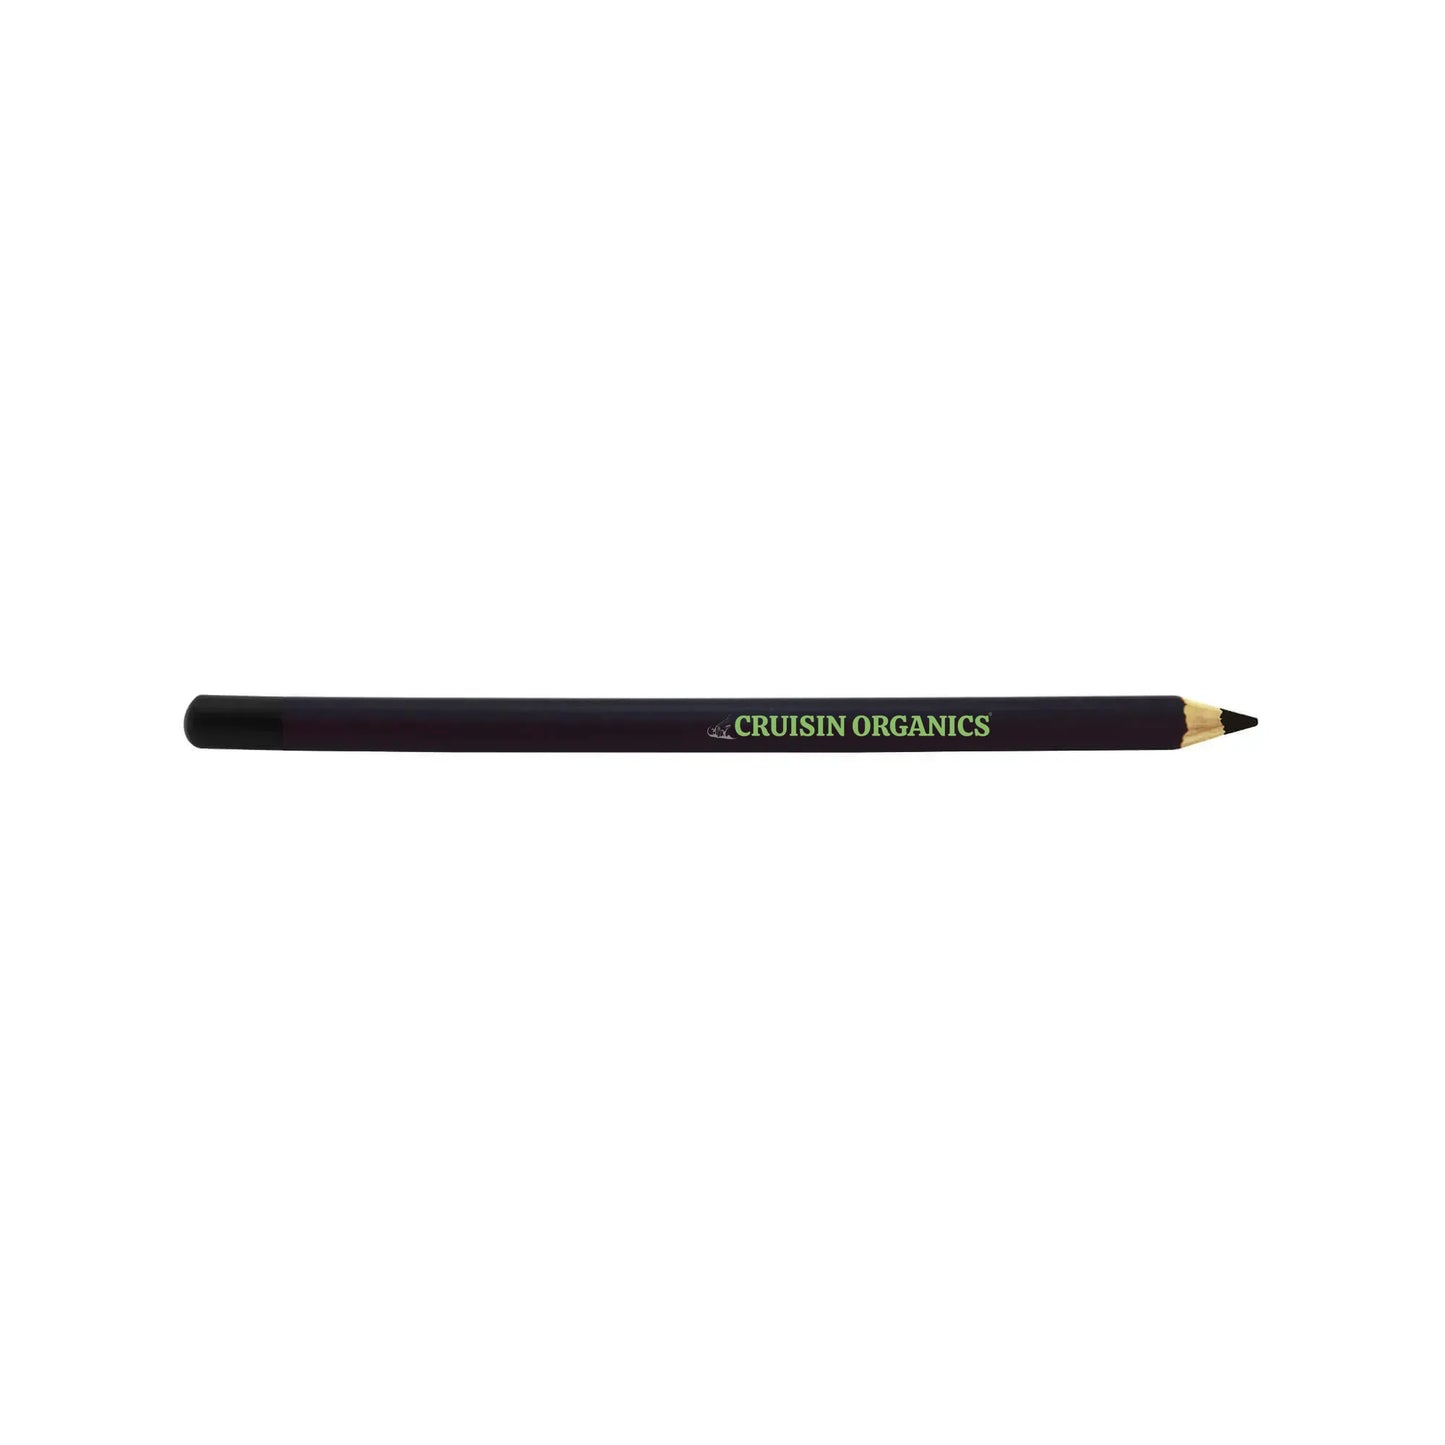 Black Eye Pencil